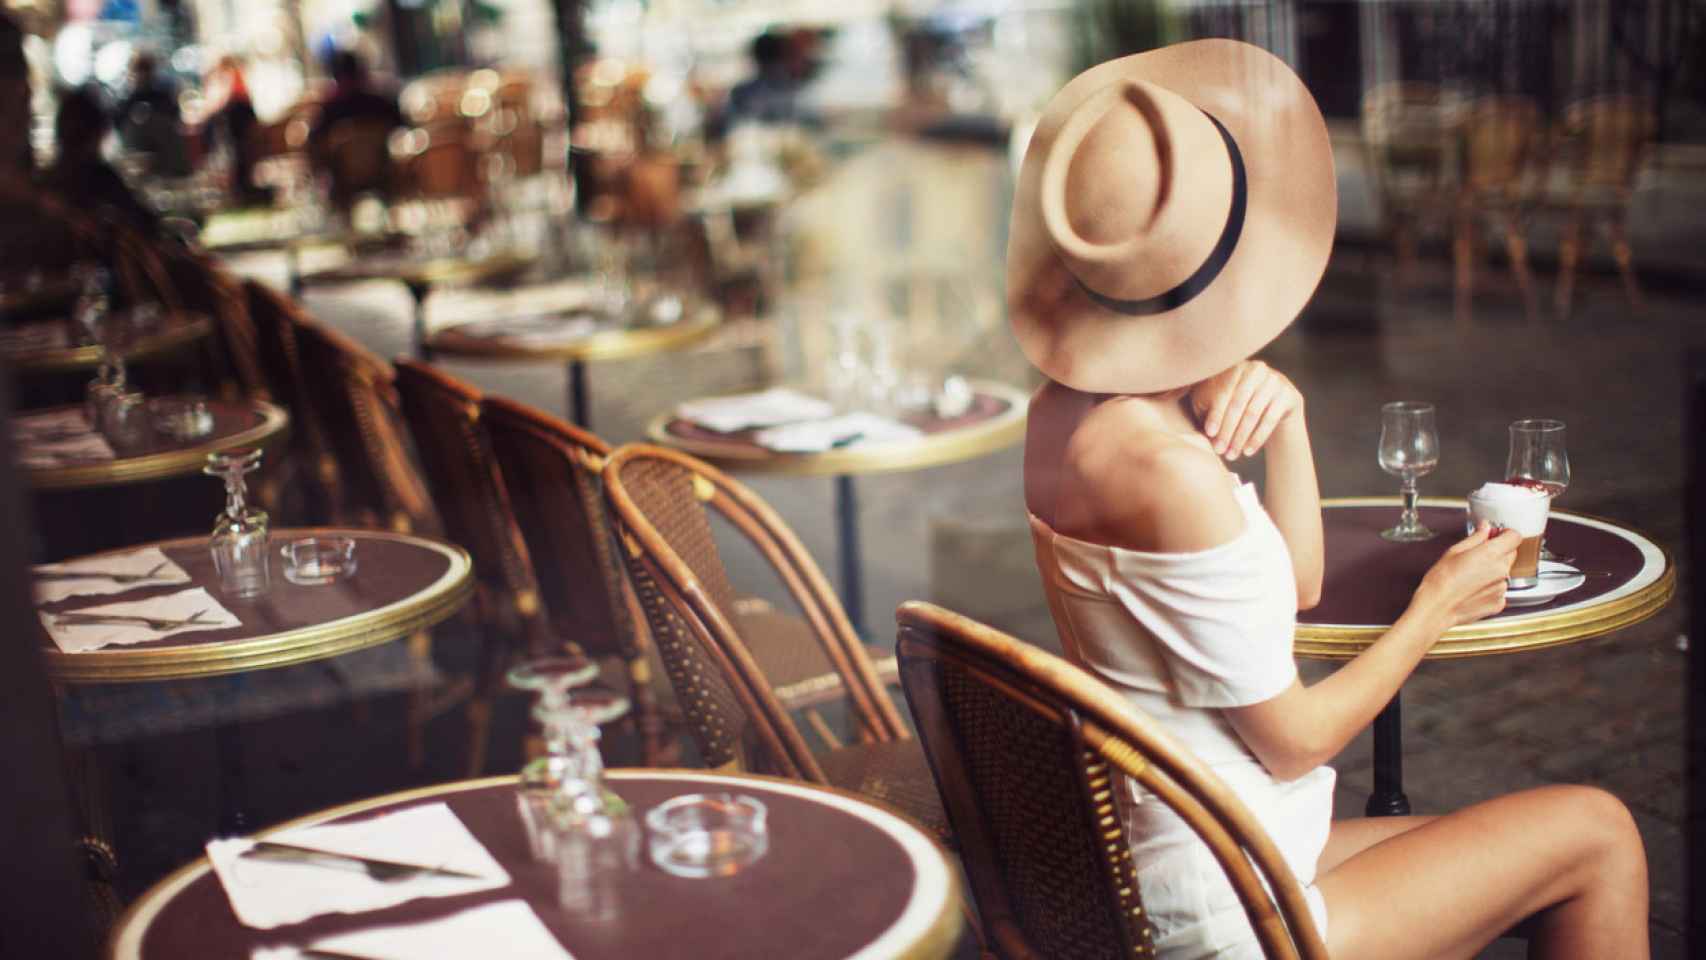 Mujeres líderes nos recomiendan 5 restaurantes alrededor del mundo para una cita inolvidable (III)